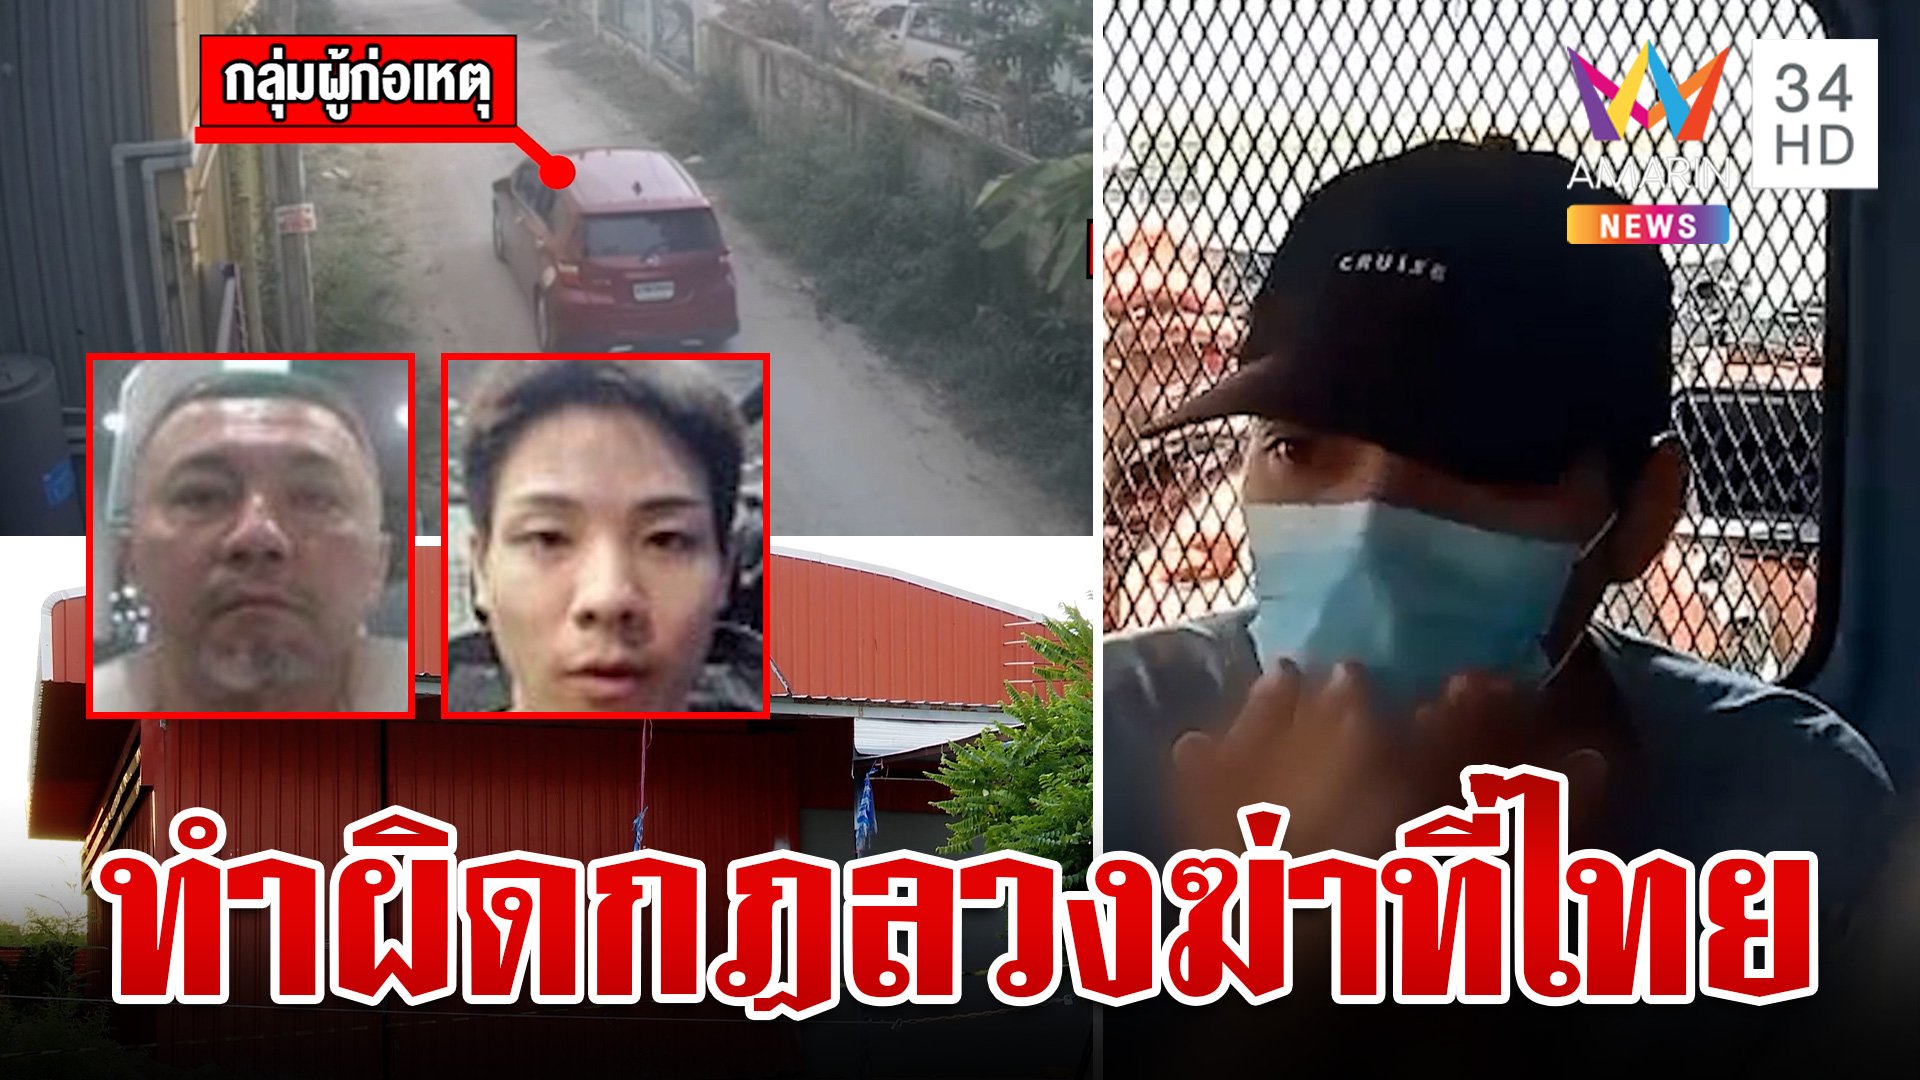 ล่าข้ามโลก 2 ยากูซ่าลวงเพื่อนฆ่าในไทย หลักฐานชัดไอ้เกมส์เช่ารถโกดังหั่นร่าง   | ทุบโต๊ะข่าว | 25 เม.ย. 67 | AMARIN TVHD34